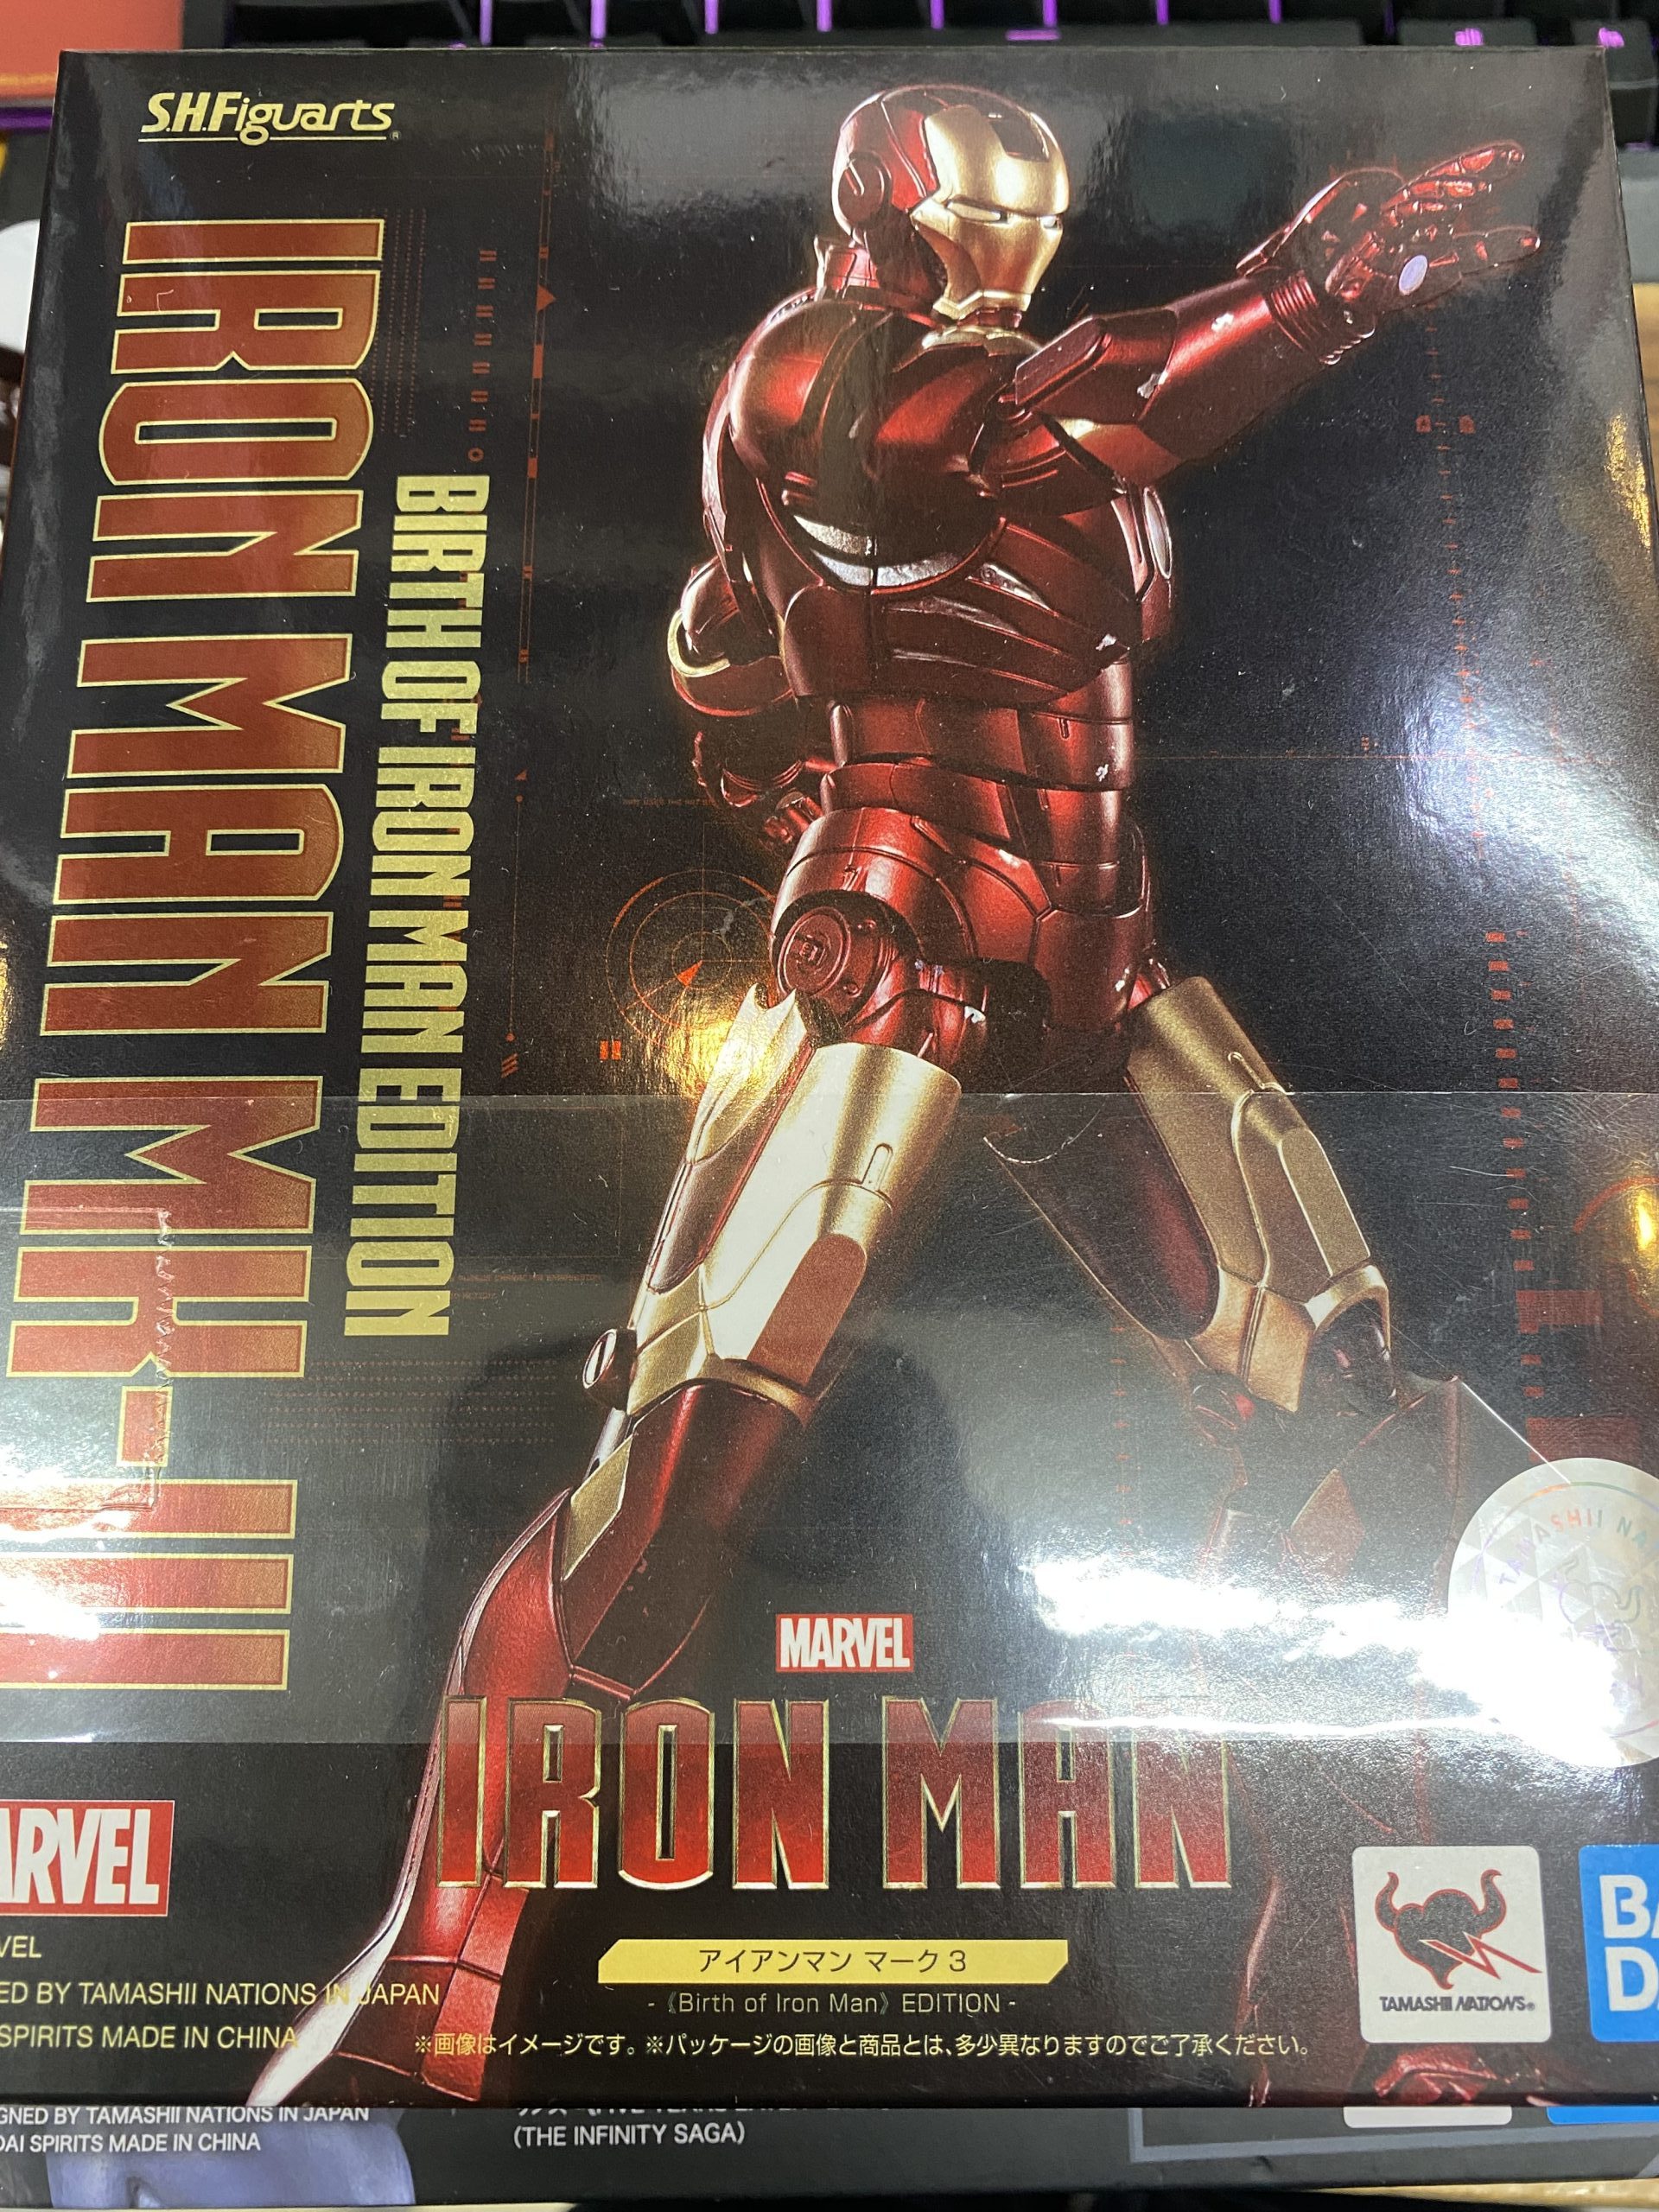 S.H.Figuarts アイアンマン マーク3 -<<Birth of Iron Man>> EDITION- 